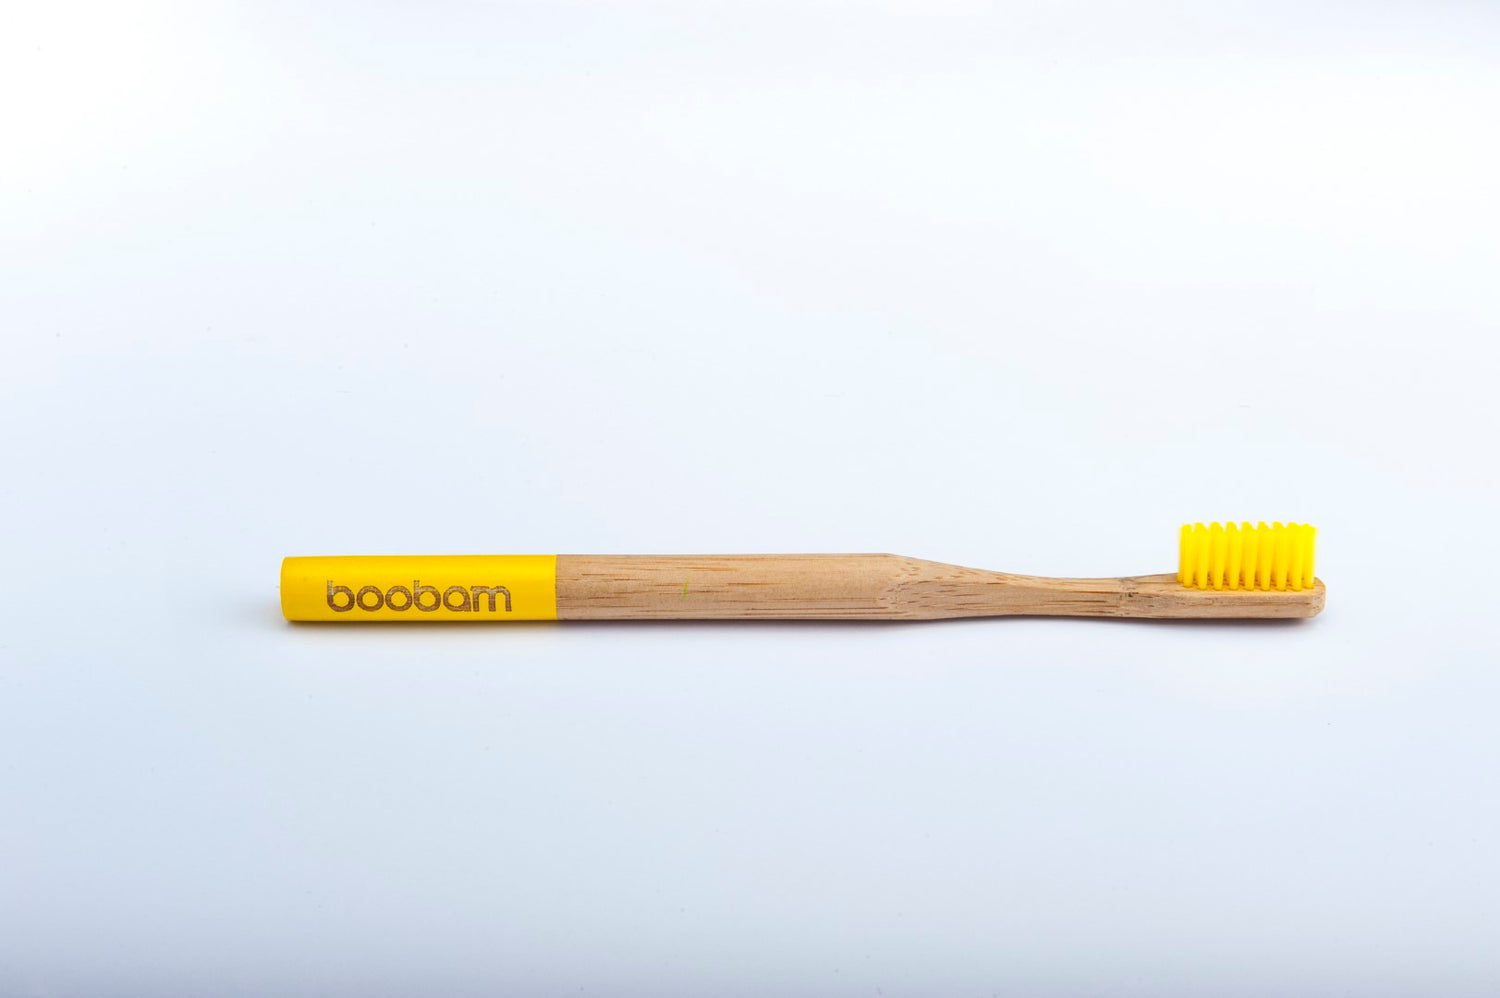 boobam®ID toothbrush-boobam